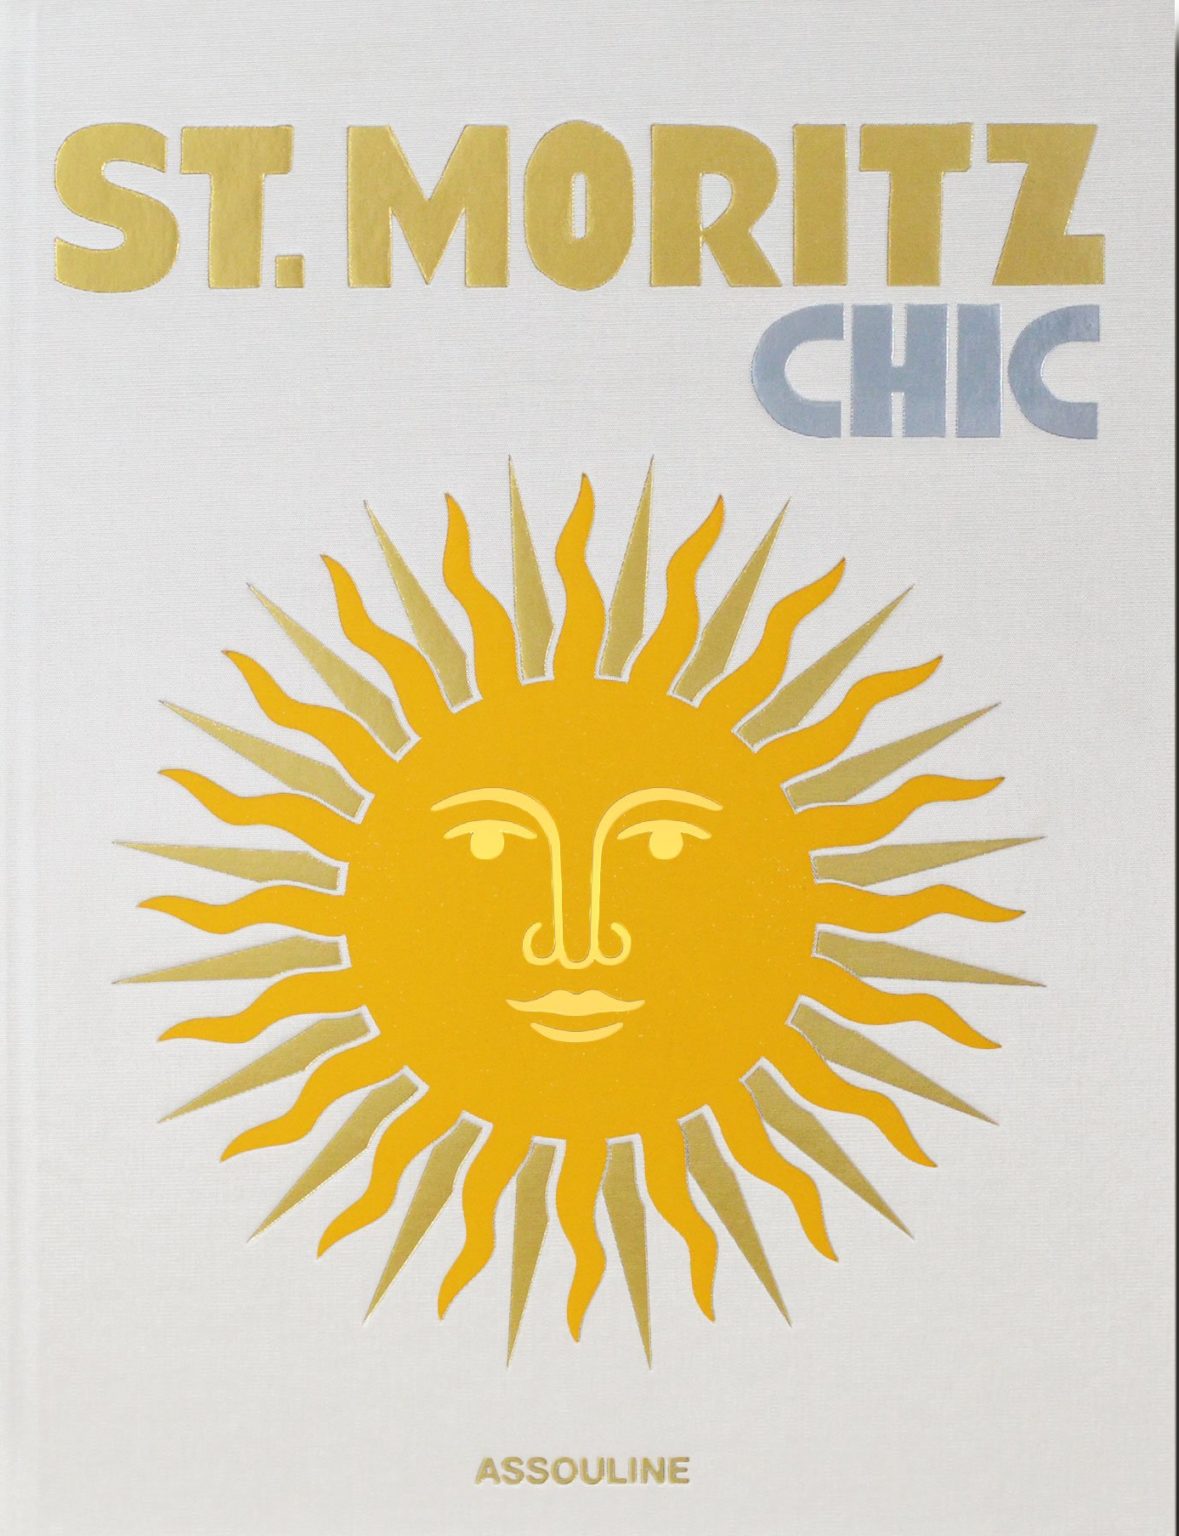 St. Moritz Chic